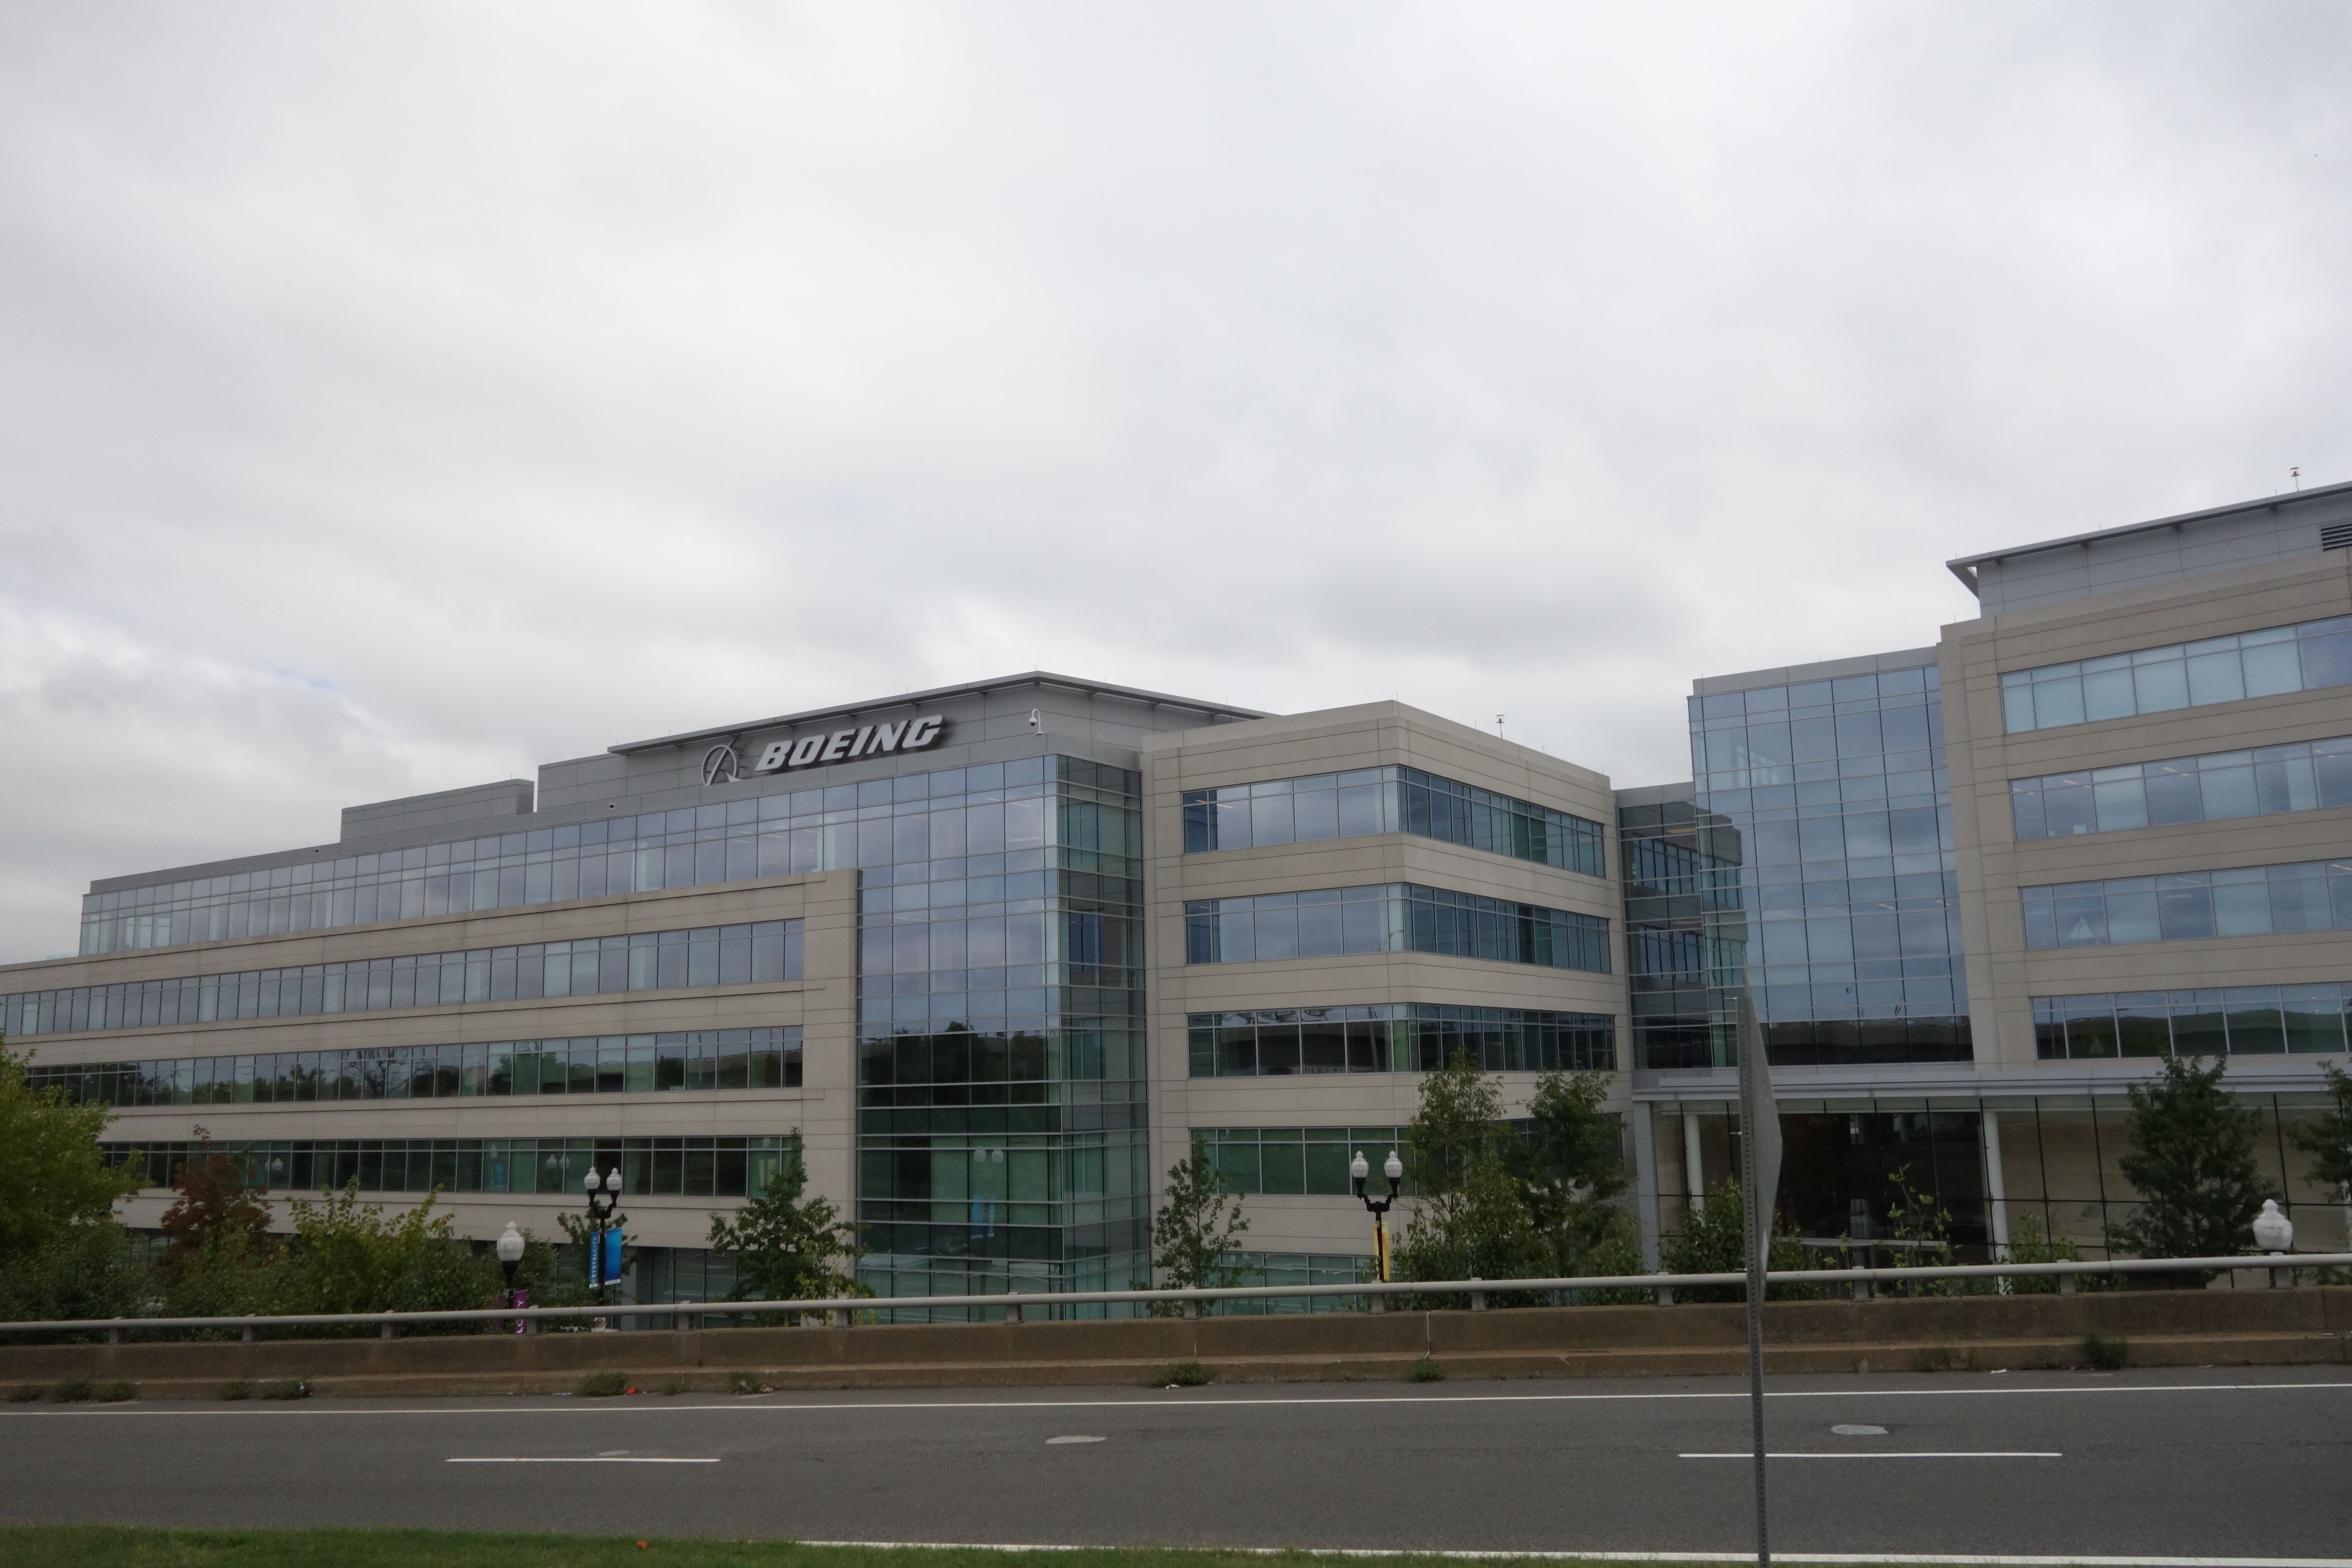 Boeing's headquarters in Virginia